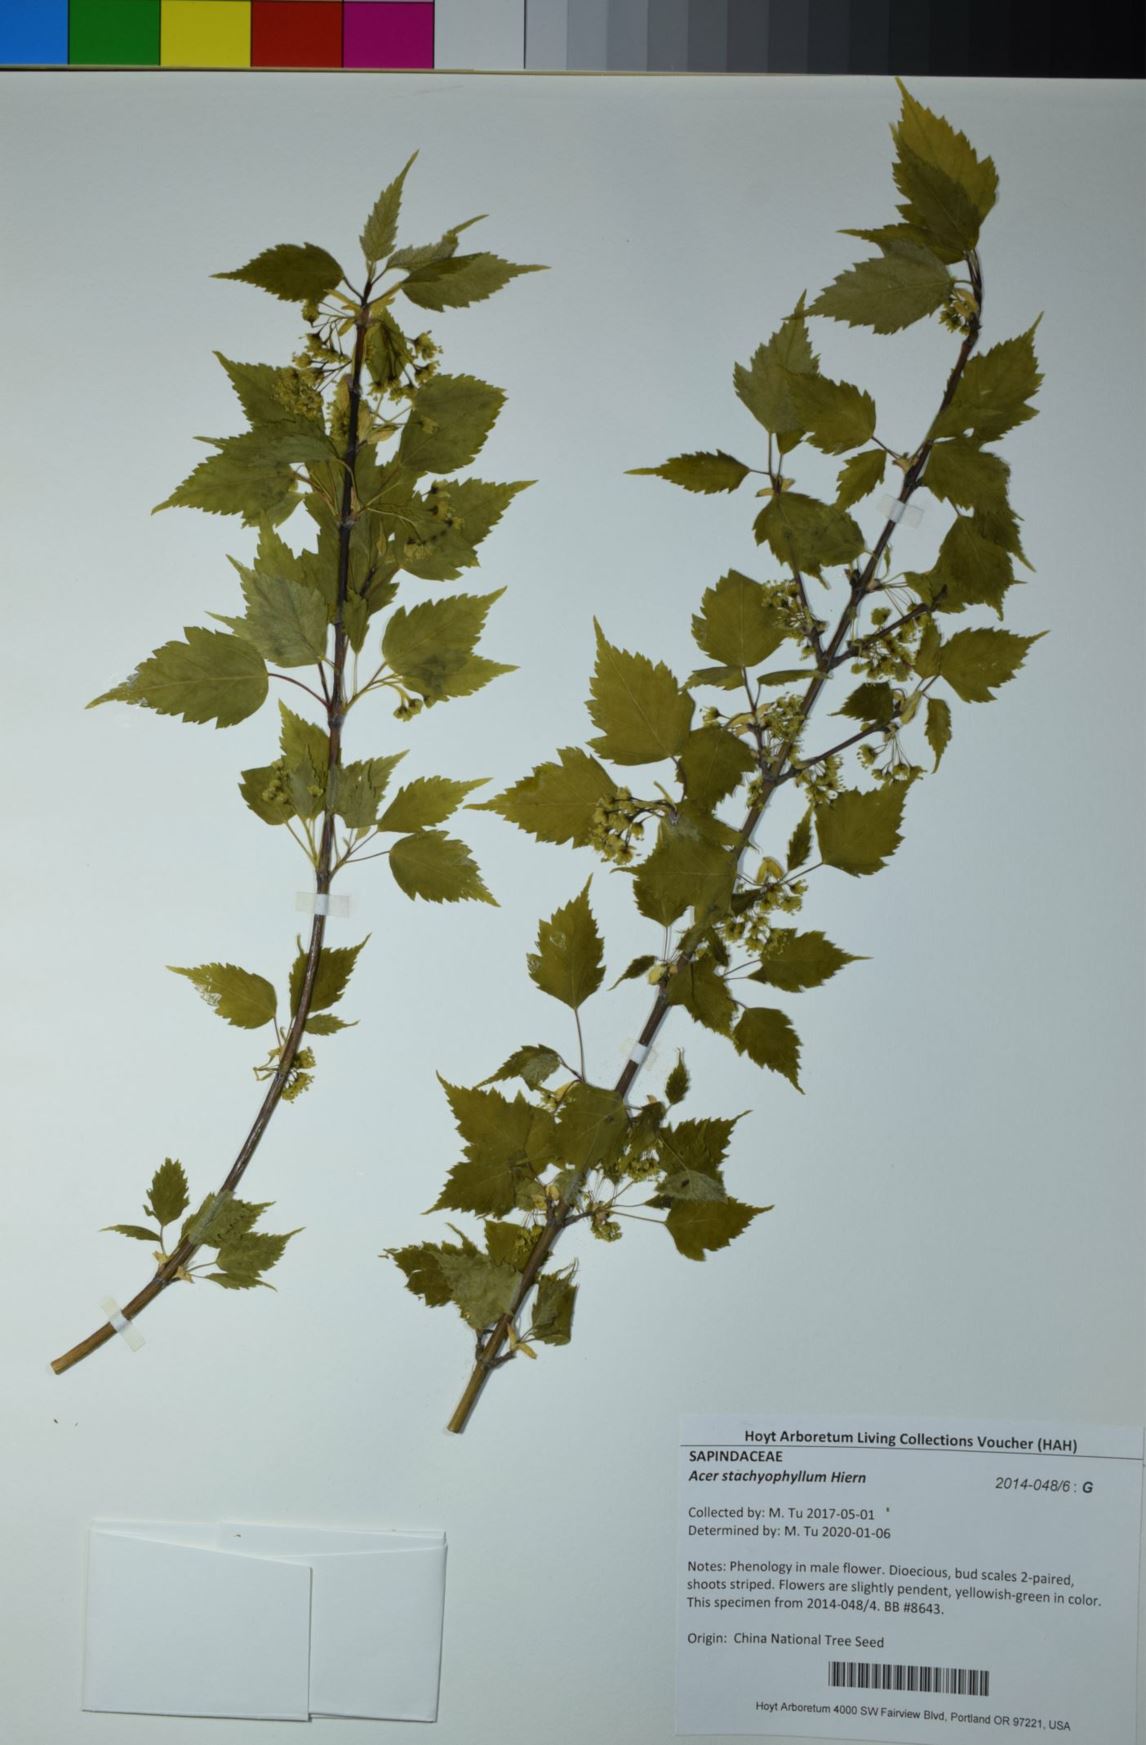 Acer stachyophyllum - wooly leaf maple, birch-leaf maple